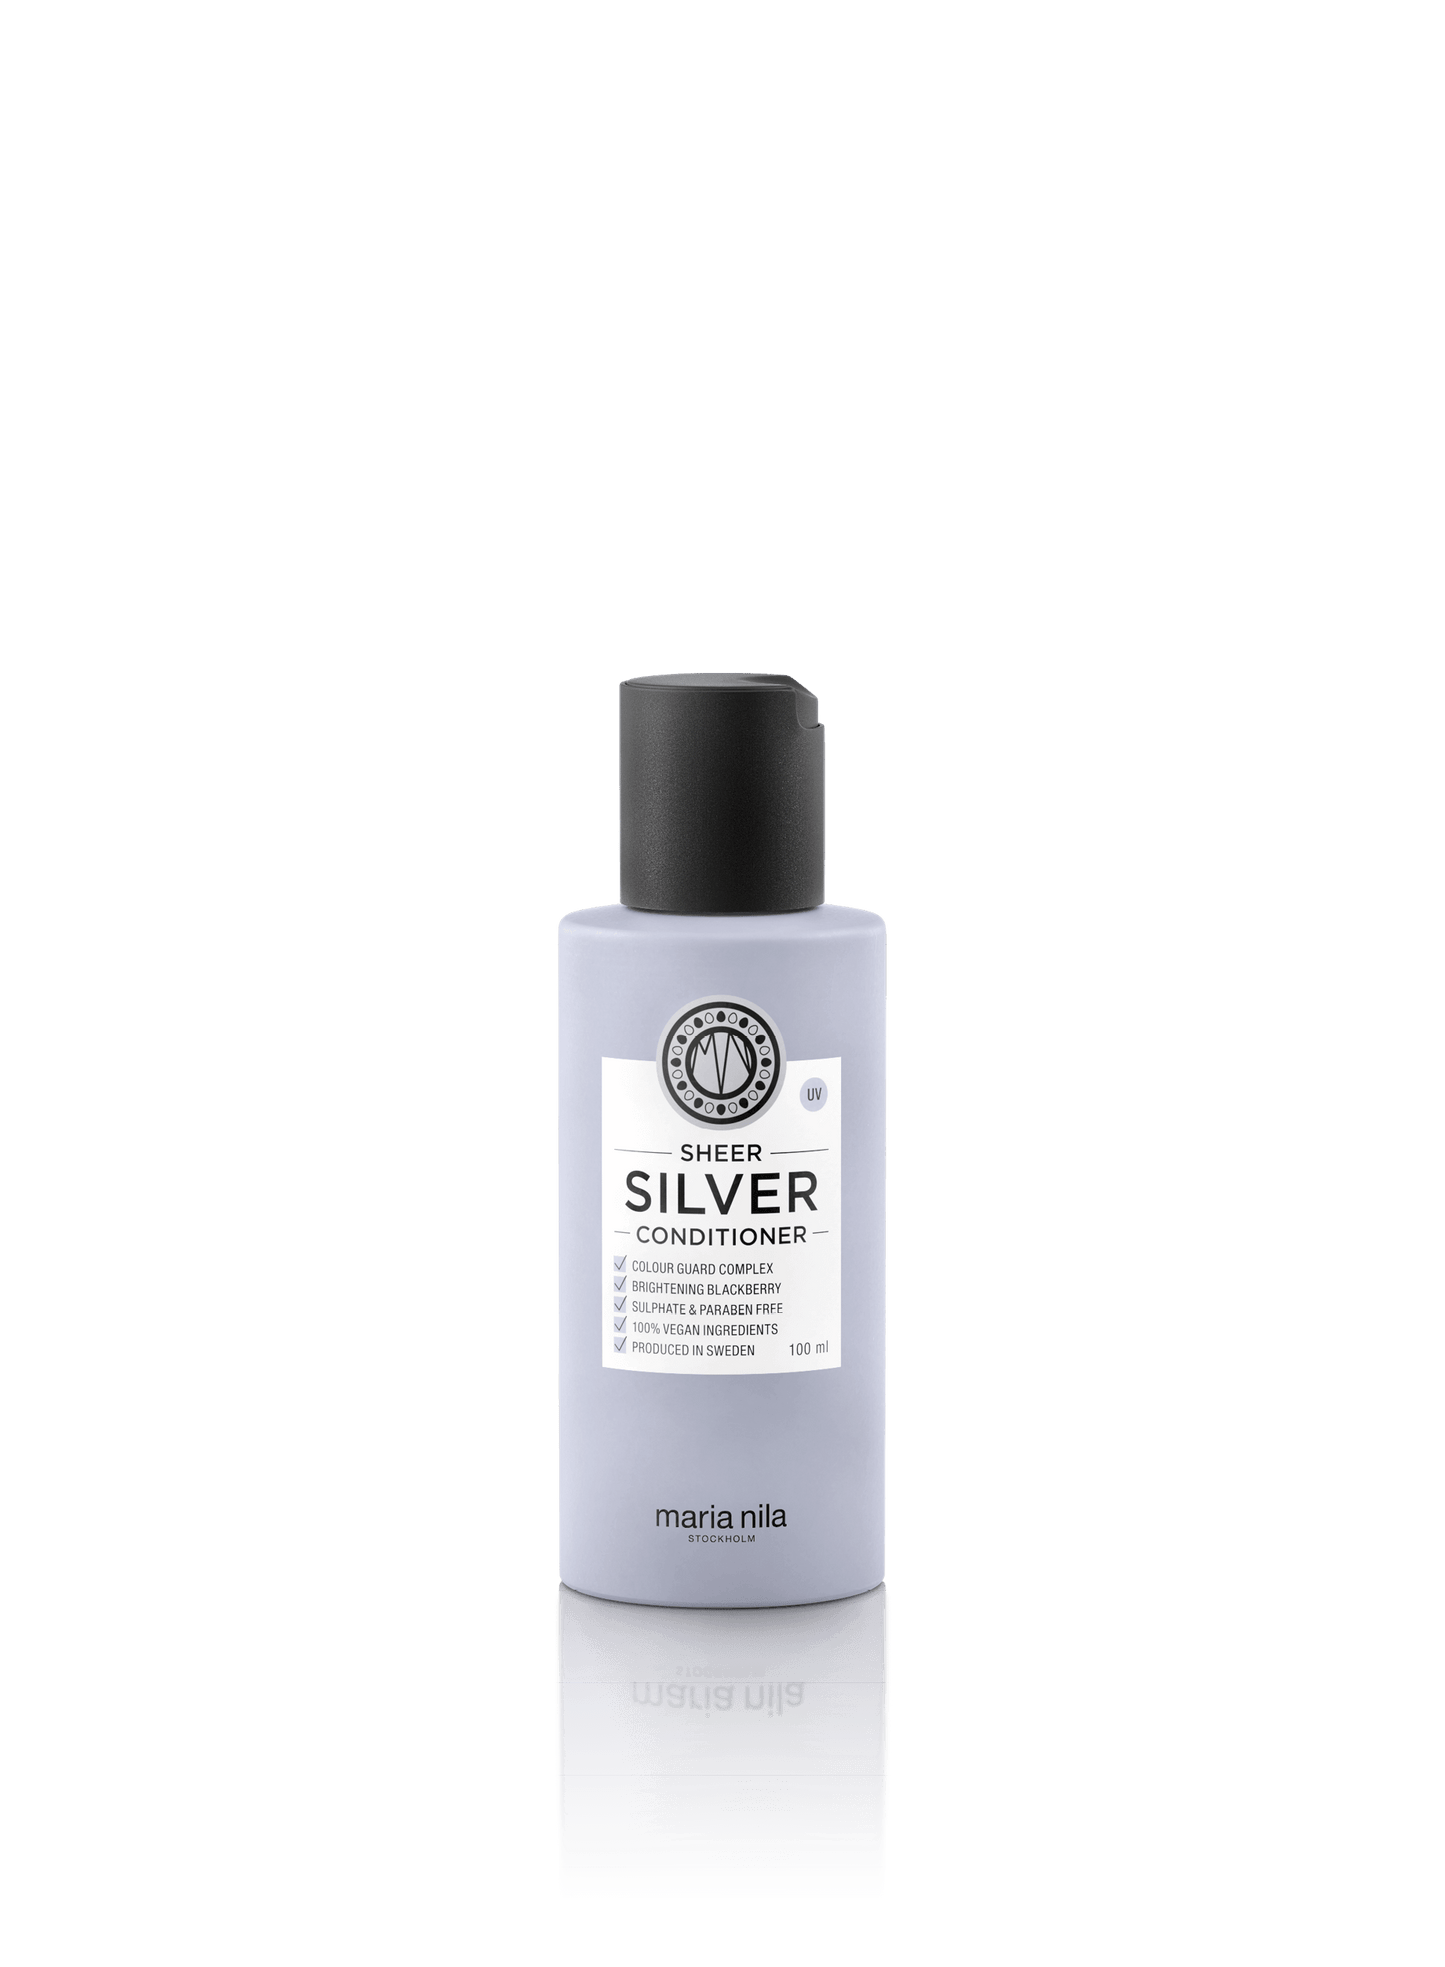 Sheer Silver - Conditioner - Maria Nila